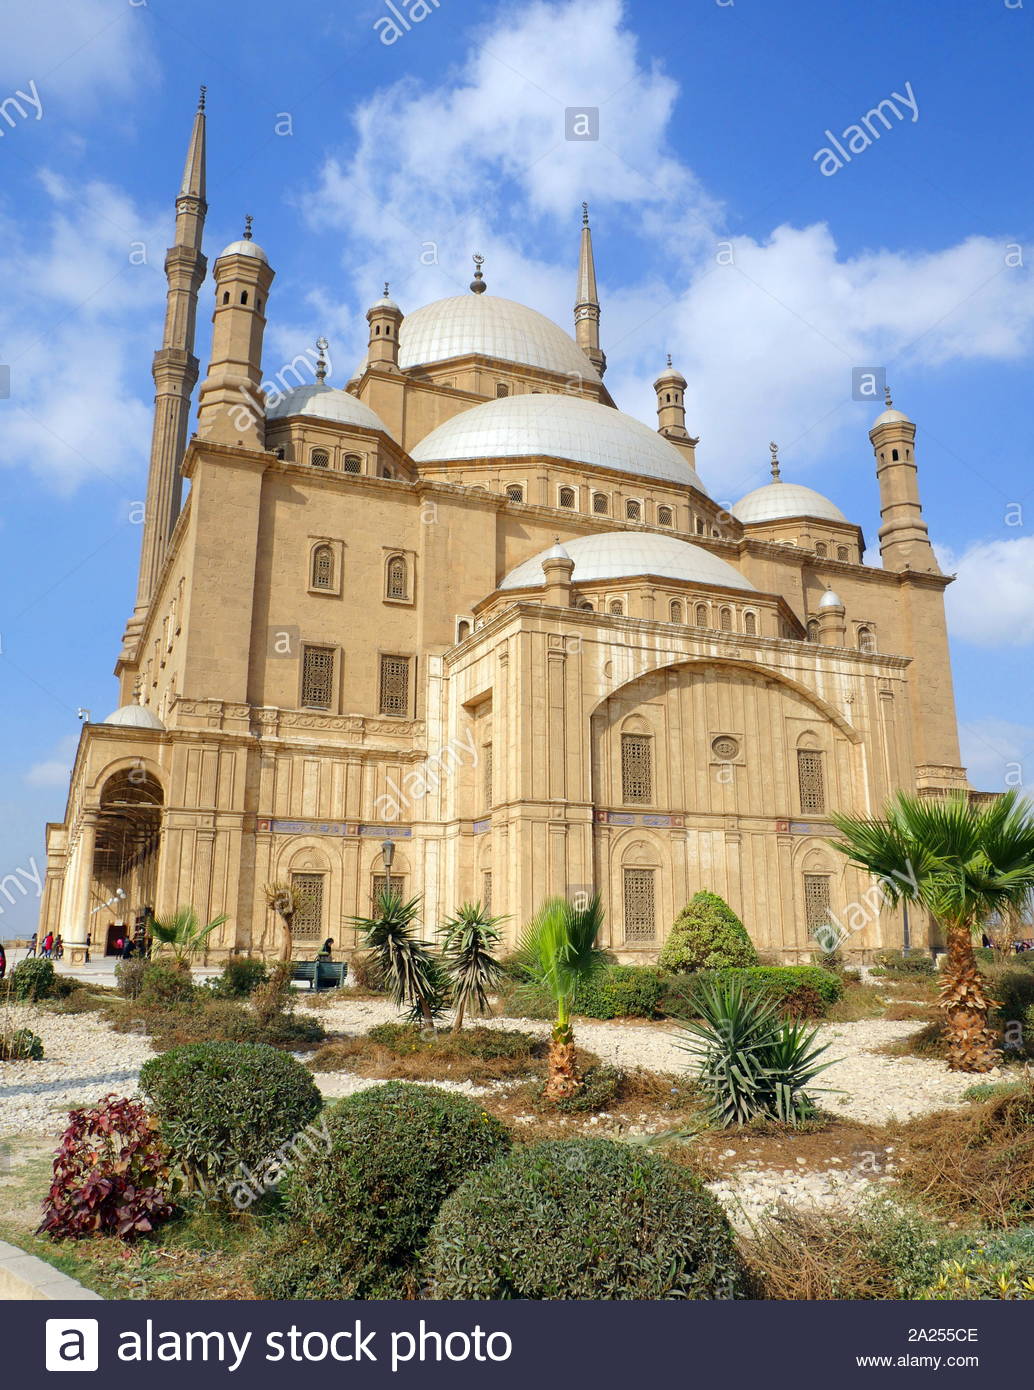 La Grande Mosquée de Mohammed Ali Pasha ou Mosquée d'Albâtre, dans la Citadelle du Caire en Egypte. commandé par Muhammad Ali Pacha entre 1830 et 1848. Situé sur le sommet de la citadelle, cette mosquée, la plus grande d'être construite dans la première moitié du 19e siècle. La mosquée a été construite en mémoire de Tusun Pasha, le fils aîné de Mohammed Ali, qui est mort en 1816. Banque D'Images